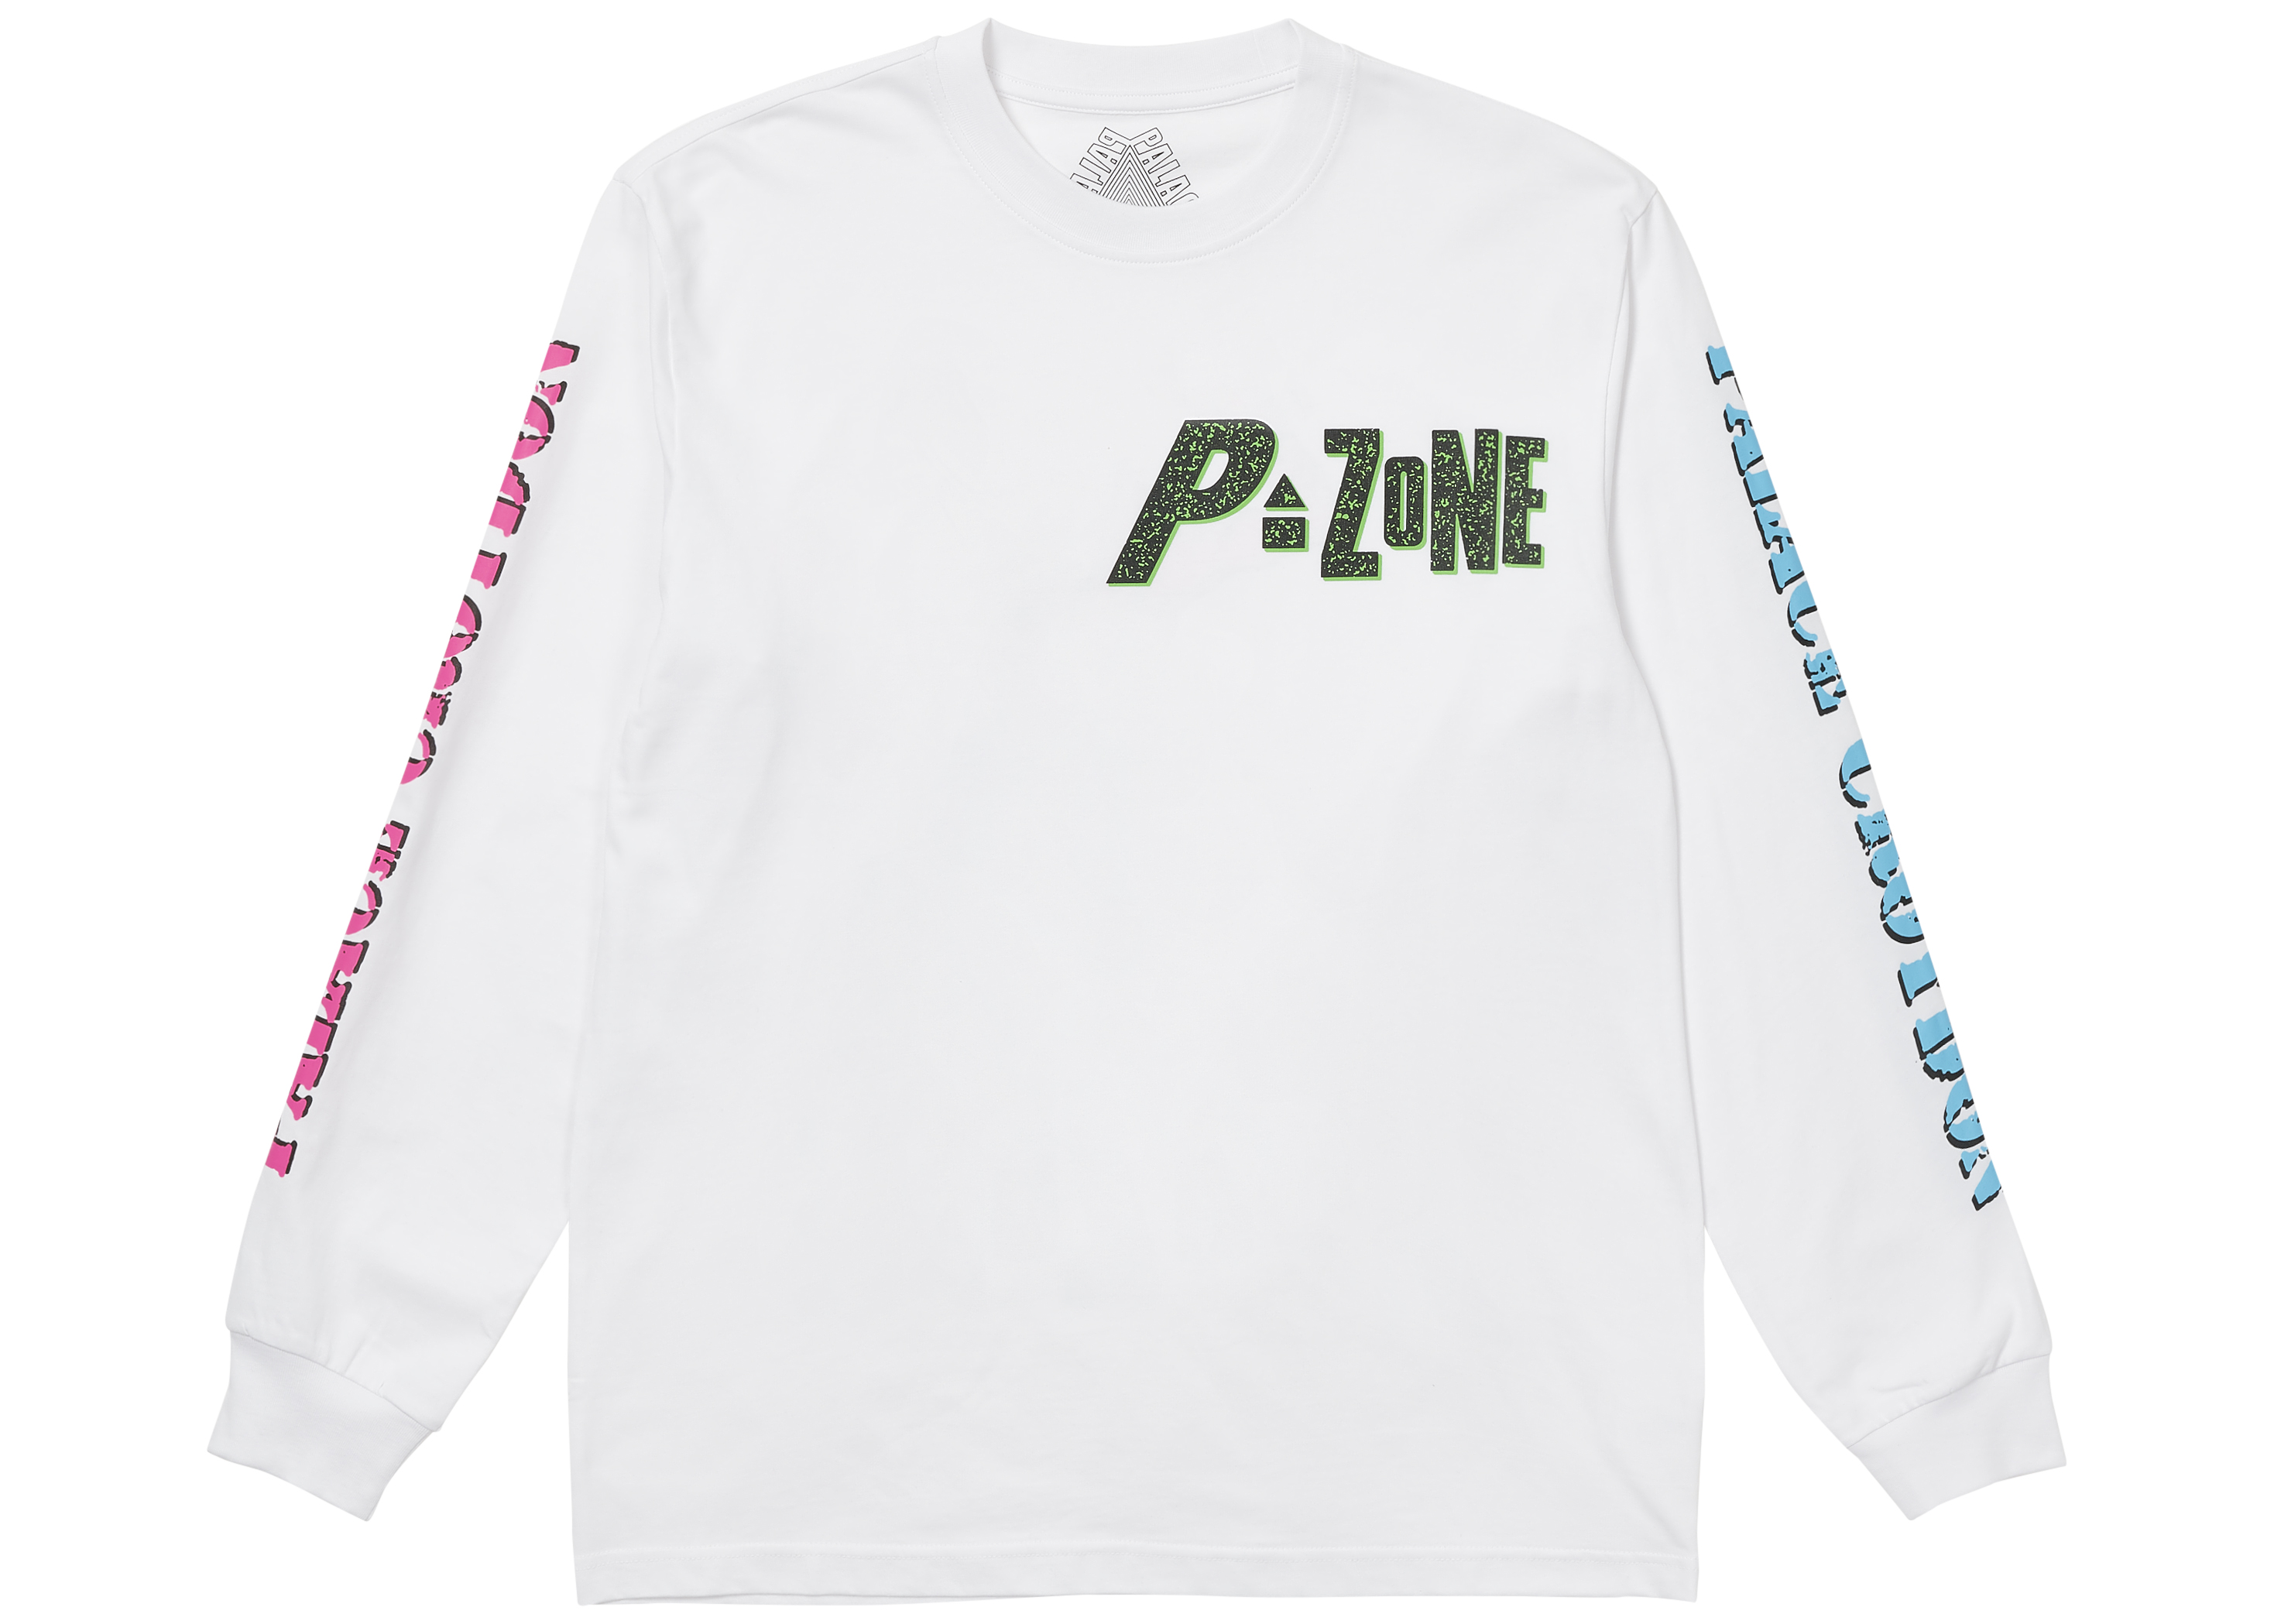 Palace M-Zone Mutant Ripper T-shirt White